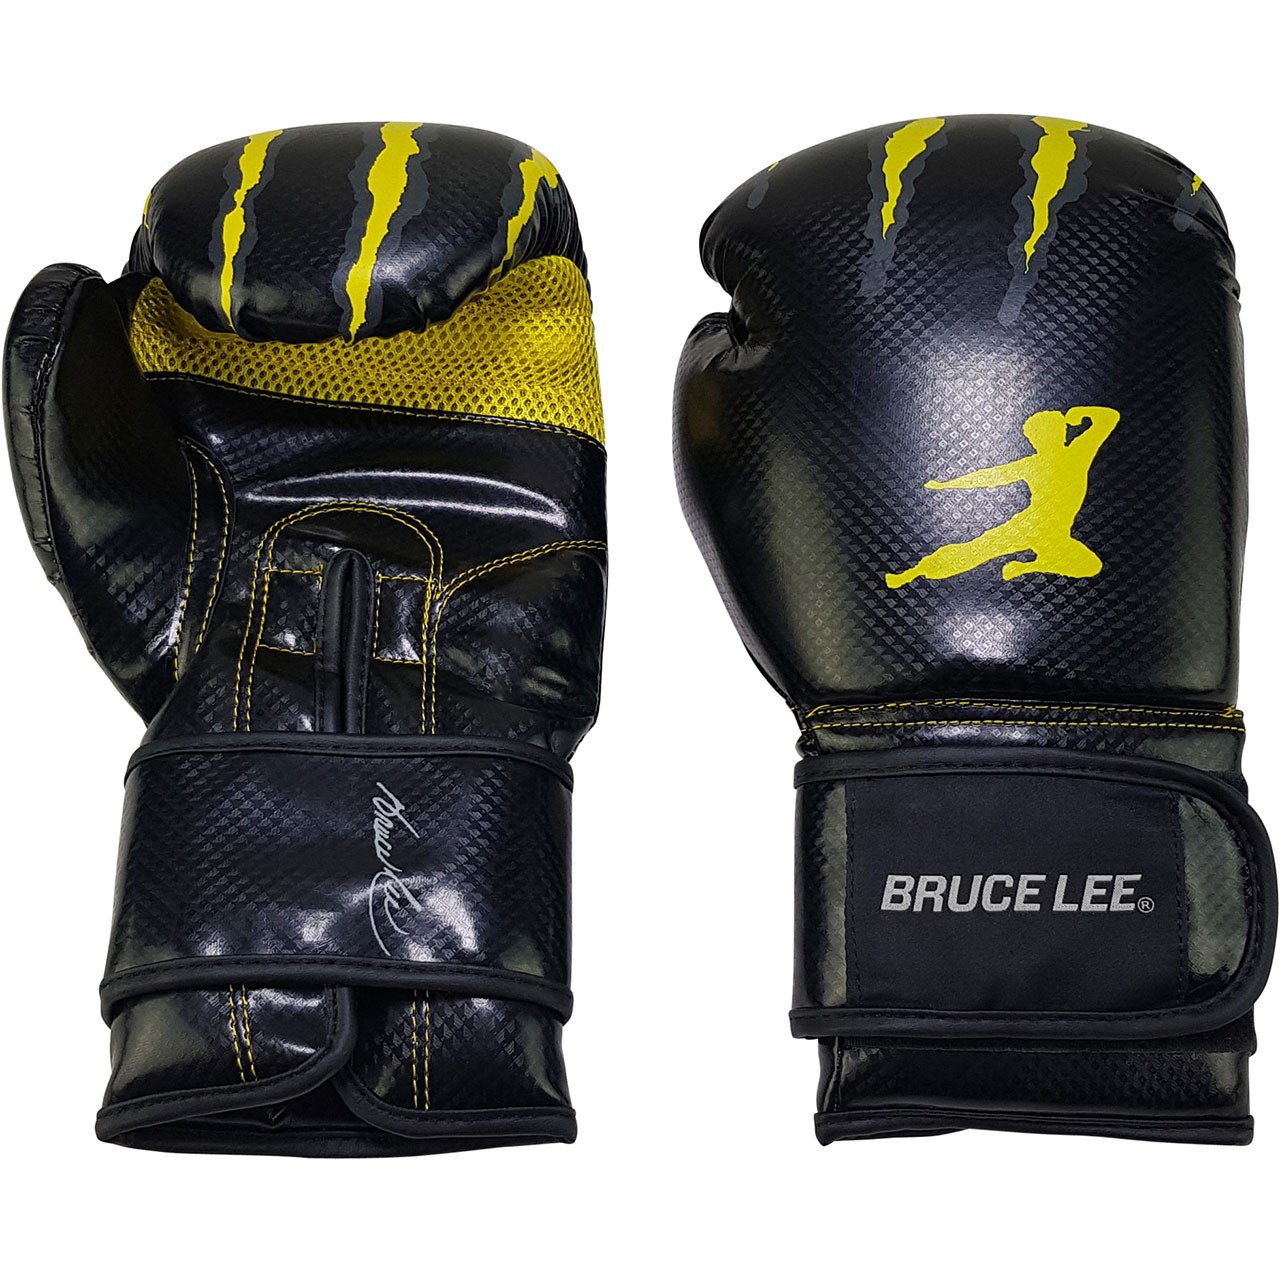 Bruce Lee Bag & Sparring Gloves